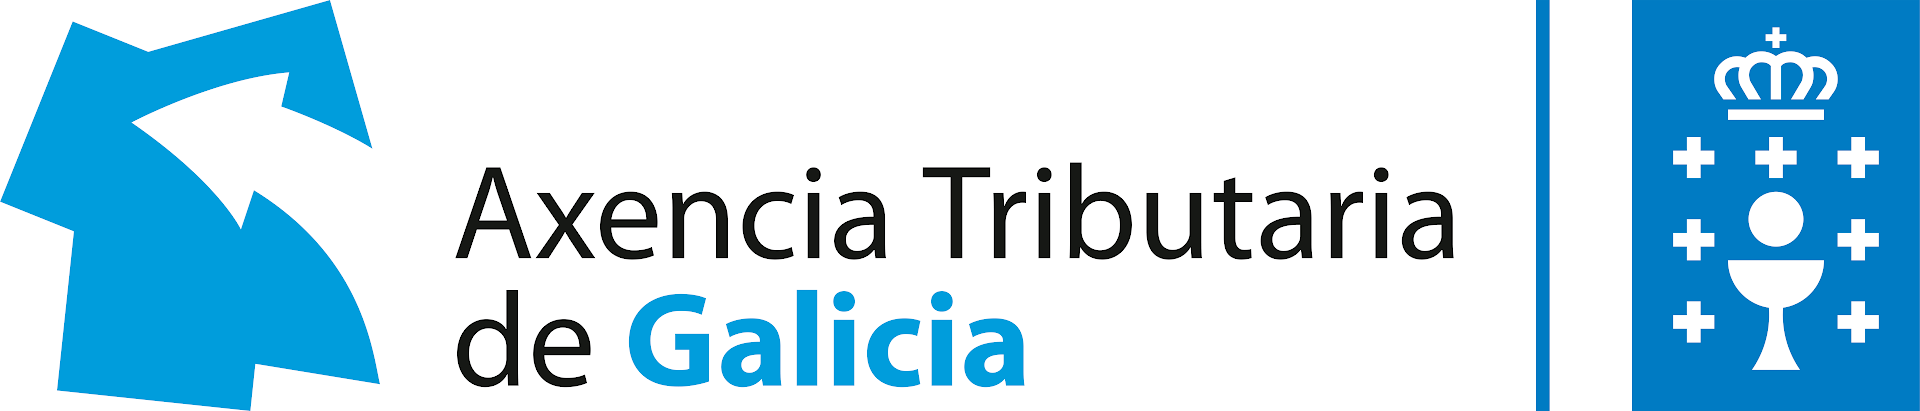 Axencia Tributaria de Galicia